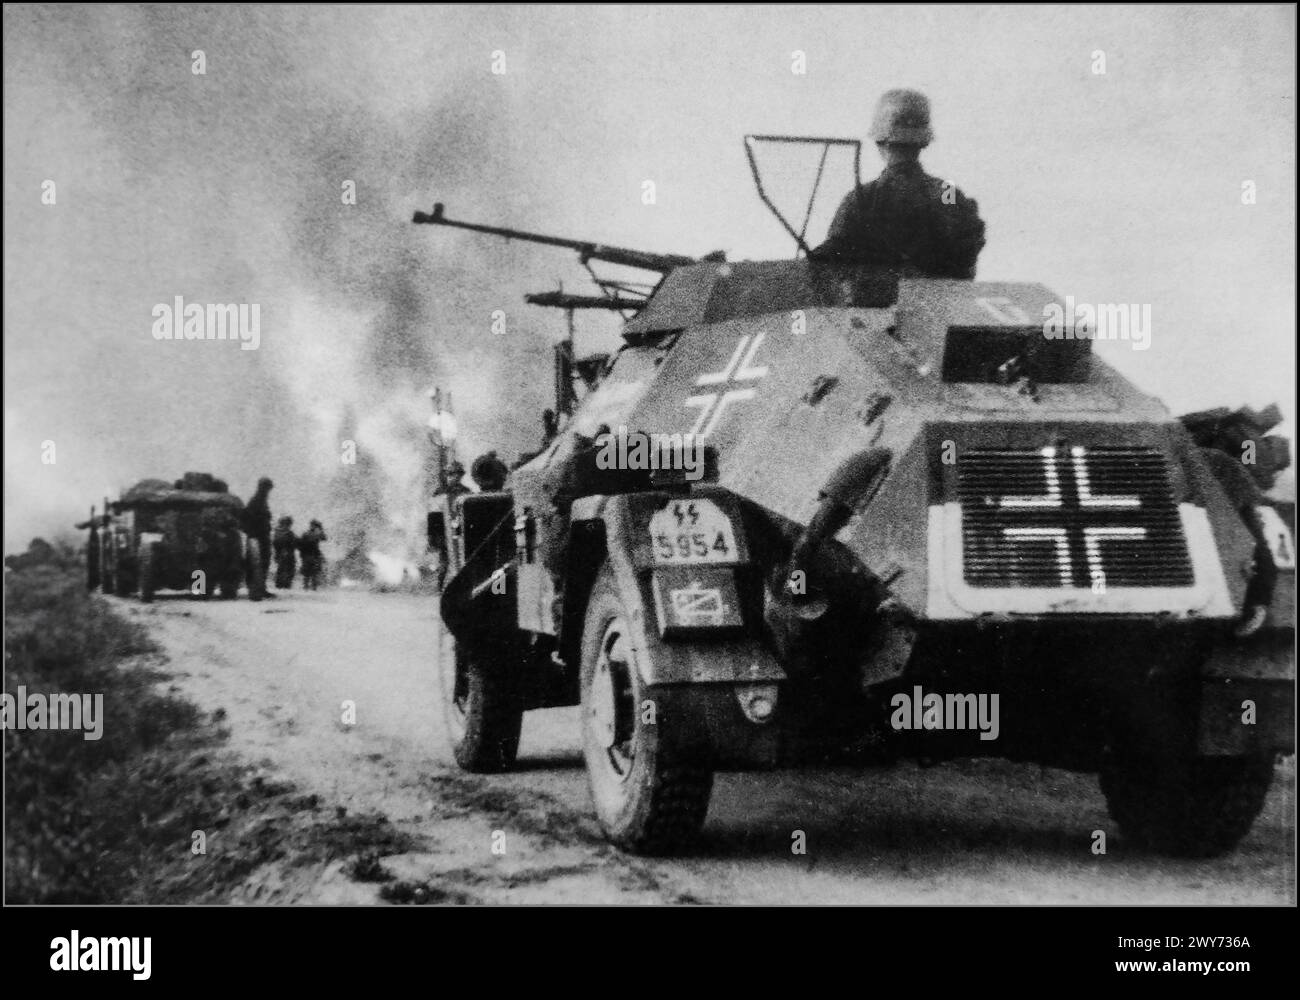 OPÉRATION BARBAROSSA 1941 la voiture blindée nazie SS Das Reich SD.Kfz. La 221e division SS 'Das Reich' approche d'un village soviétique en feu lors de l'invasion de l'Union soviétique par l'Allemagne nazie. L'opération Barbarossa était l'invasion de l'Union soviétique par l'Allemagne nazie et de nombreux alliés de l'axe, à partir du dimanche 22 juin 1941, pendant la seconde Guerre mondiale. Il s'agissait de la plus grande offensive terrestre de l'histoire de l'humanité, avec environ 10 millions de combattants. Banque D'Images